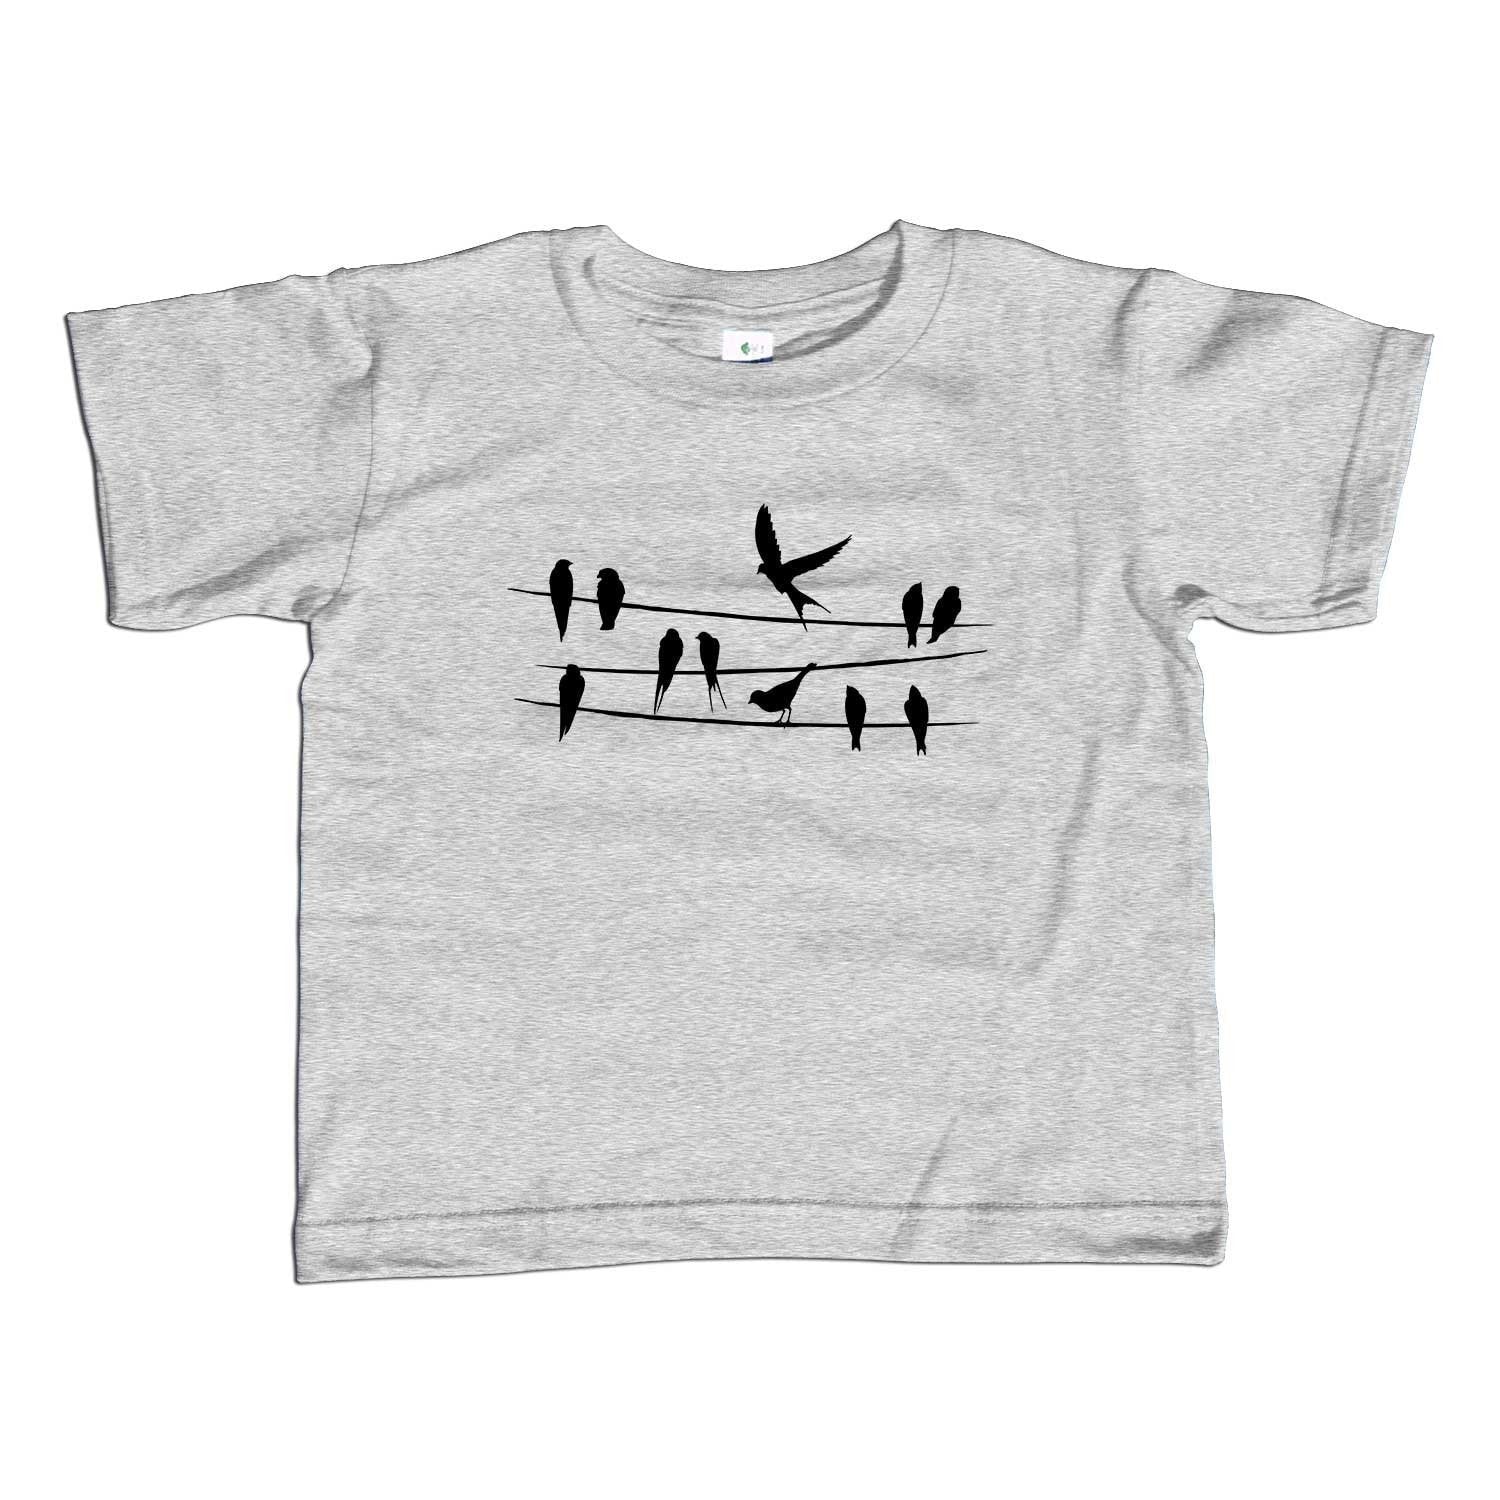 Boy's Birds on a Wire T-Shirt Hipster Bird Shirt